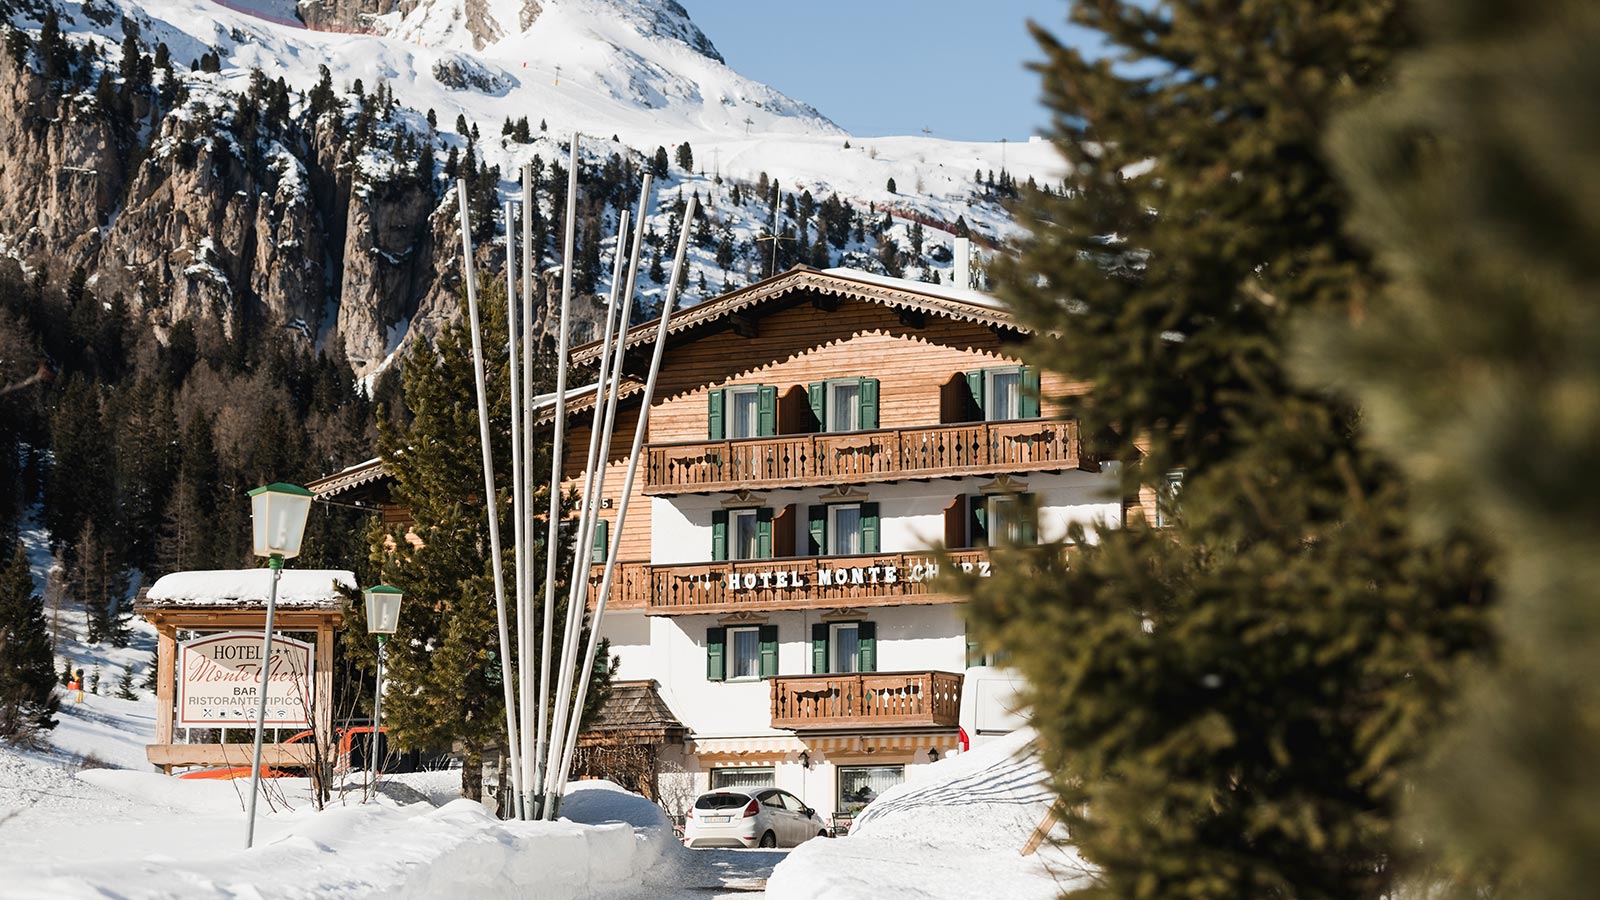 Blick auf die Fassade des Hotels Monte Cherz während der Wintersaison